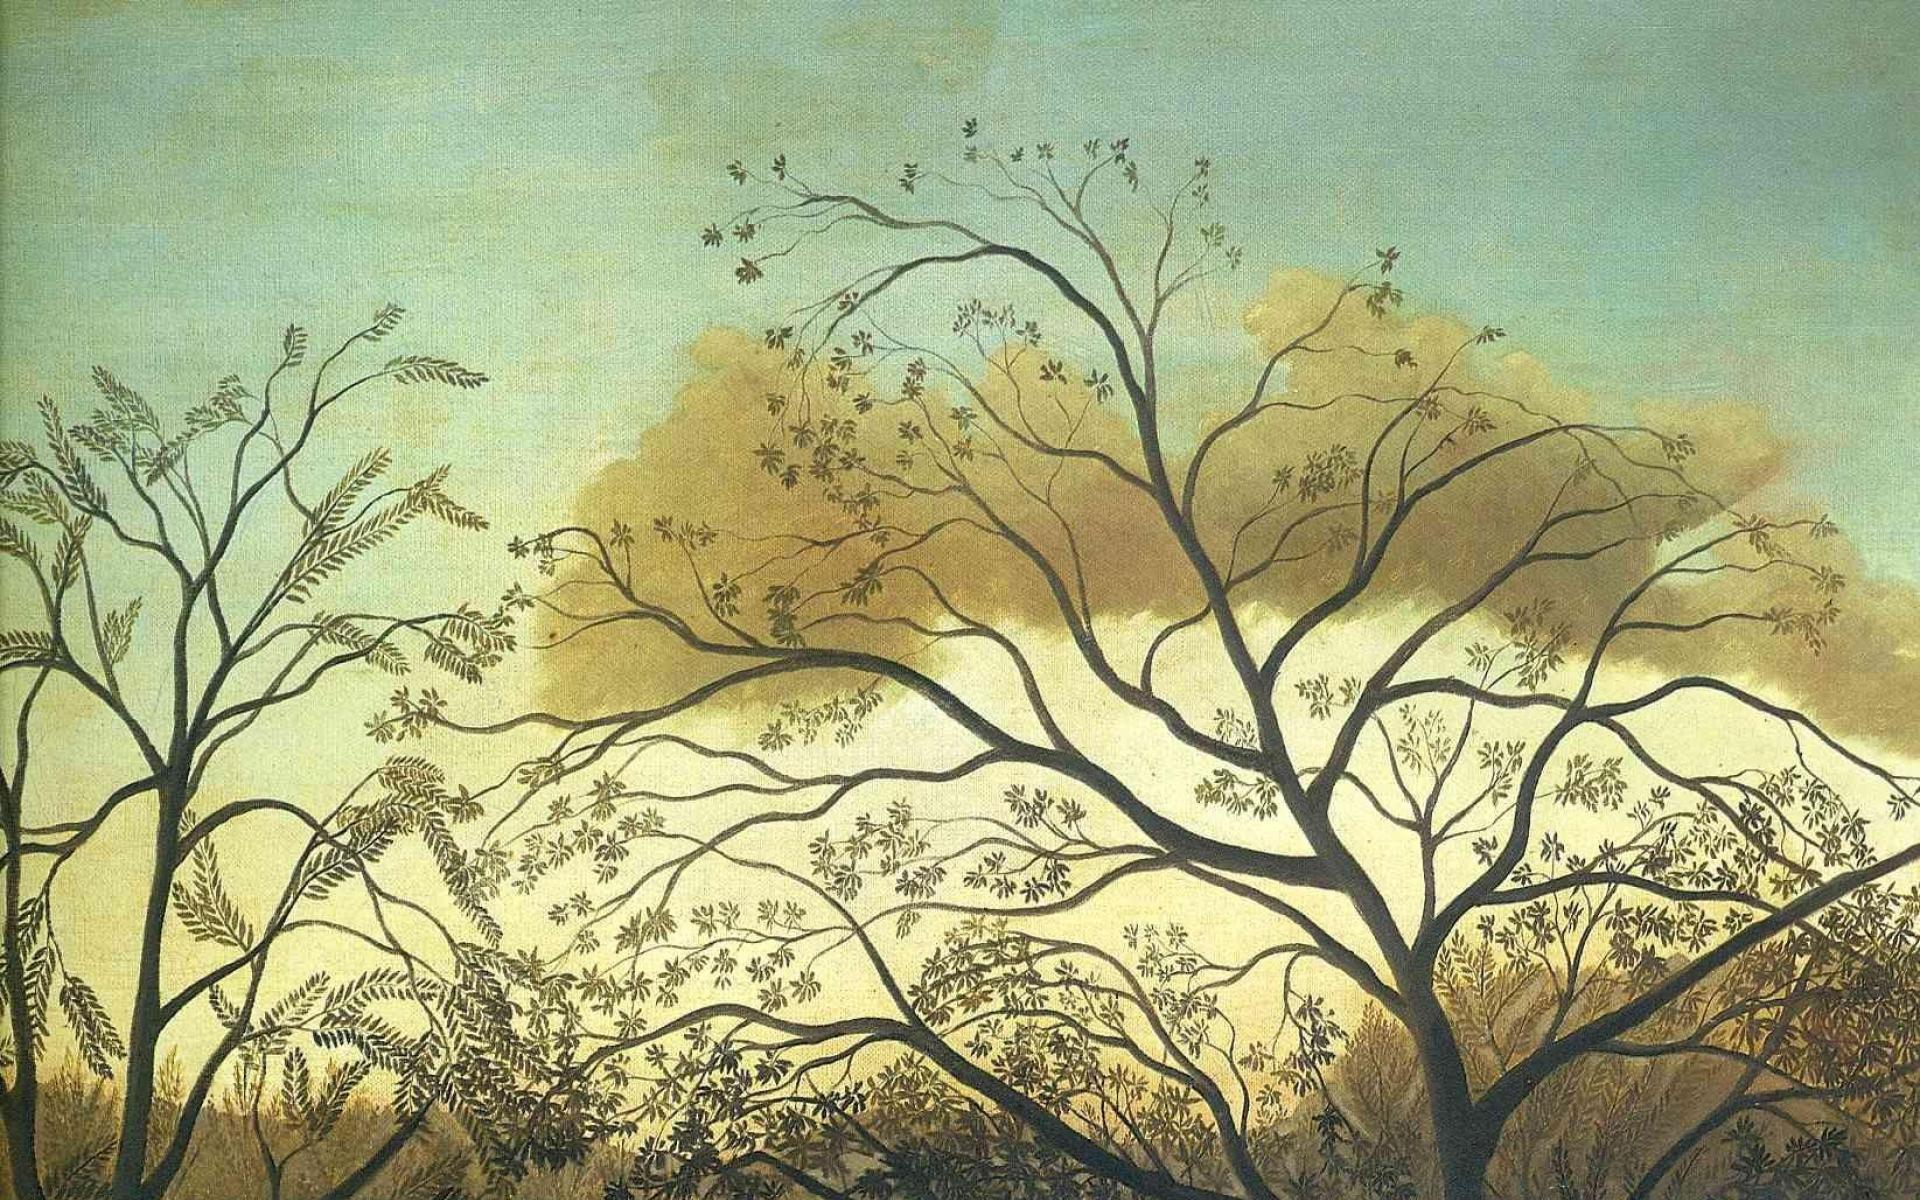 زیباترین نقاشی آنری روسو به نام قرارگاه ملاقات با کیفیت بالا 